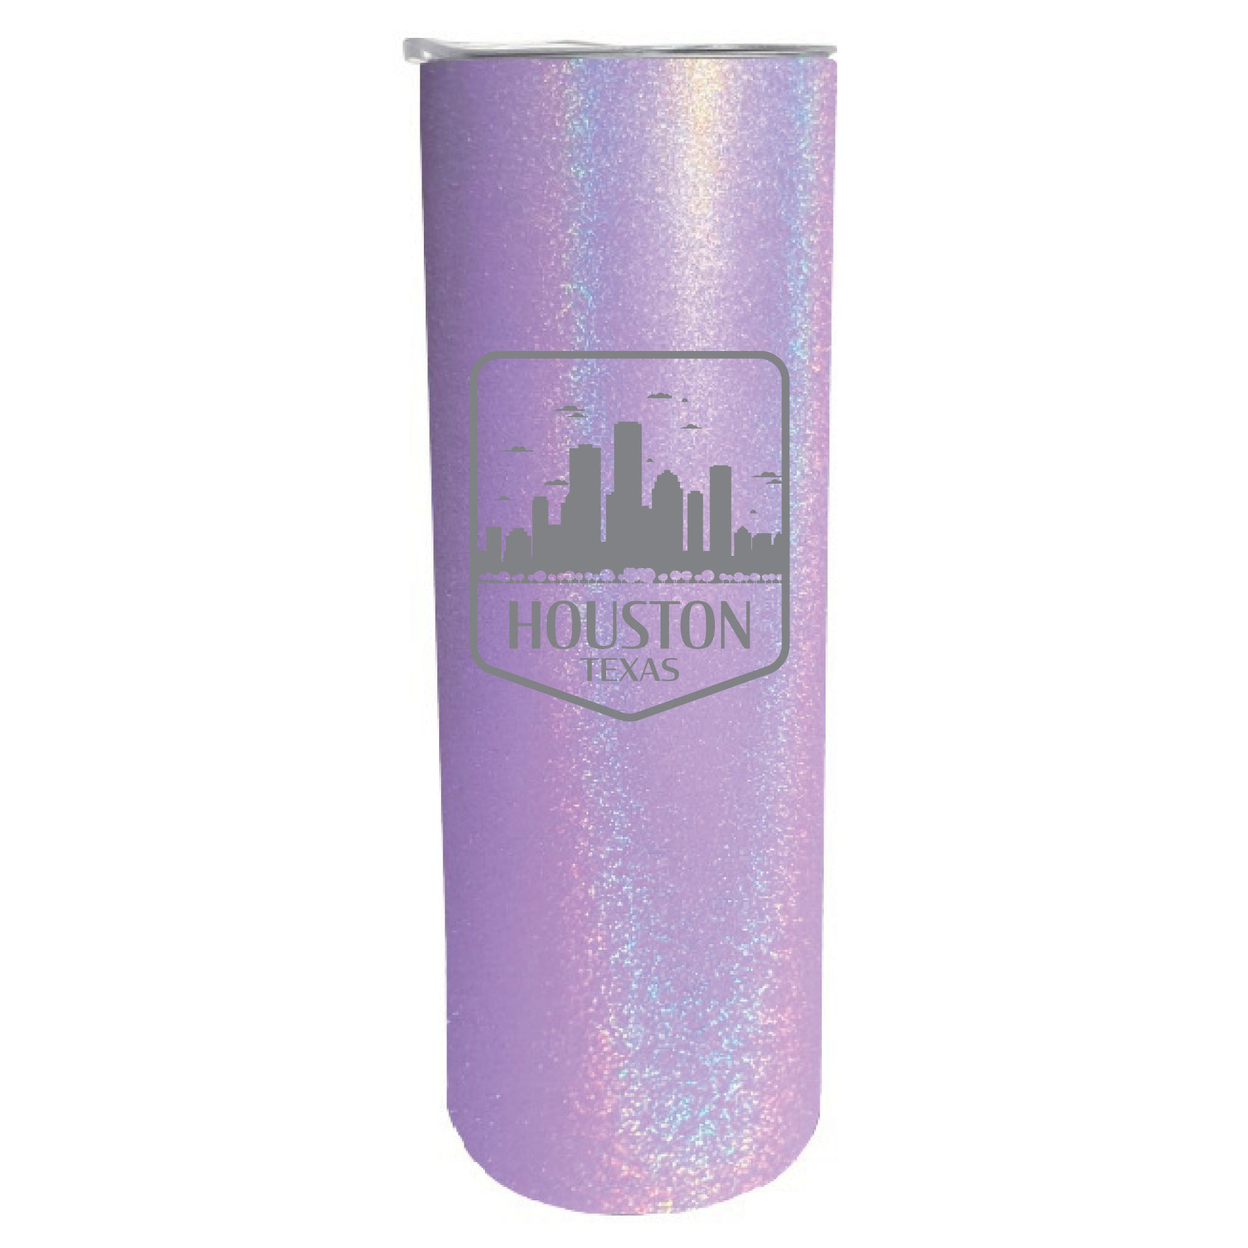 Houston Texas Souvenir 20 Oz Engraved Insulated Stainless Steel Skinny Tumbler - Black Glitter,,4-Pack